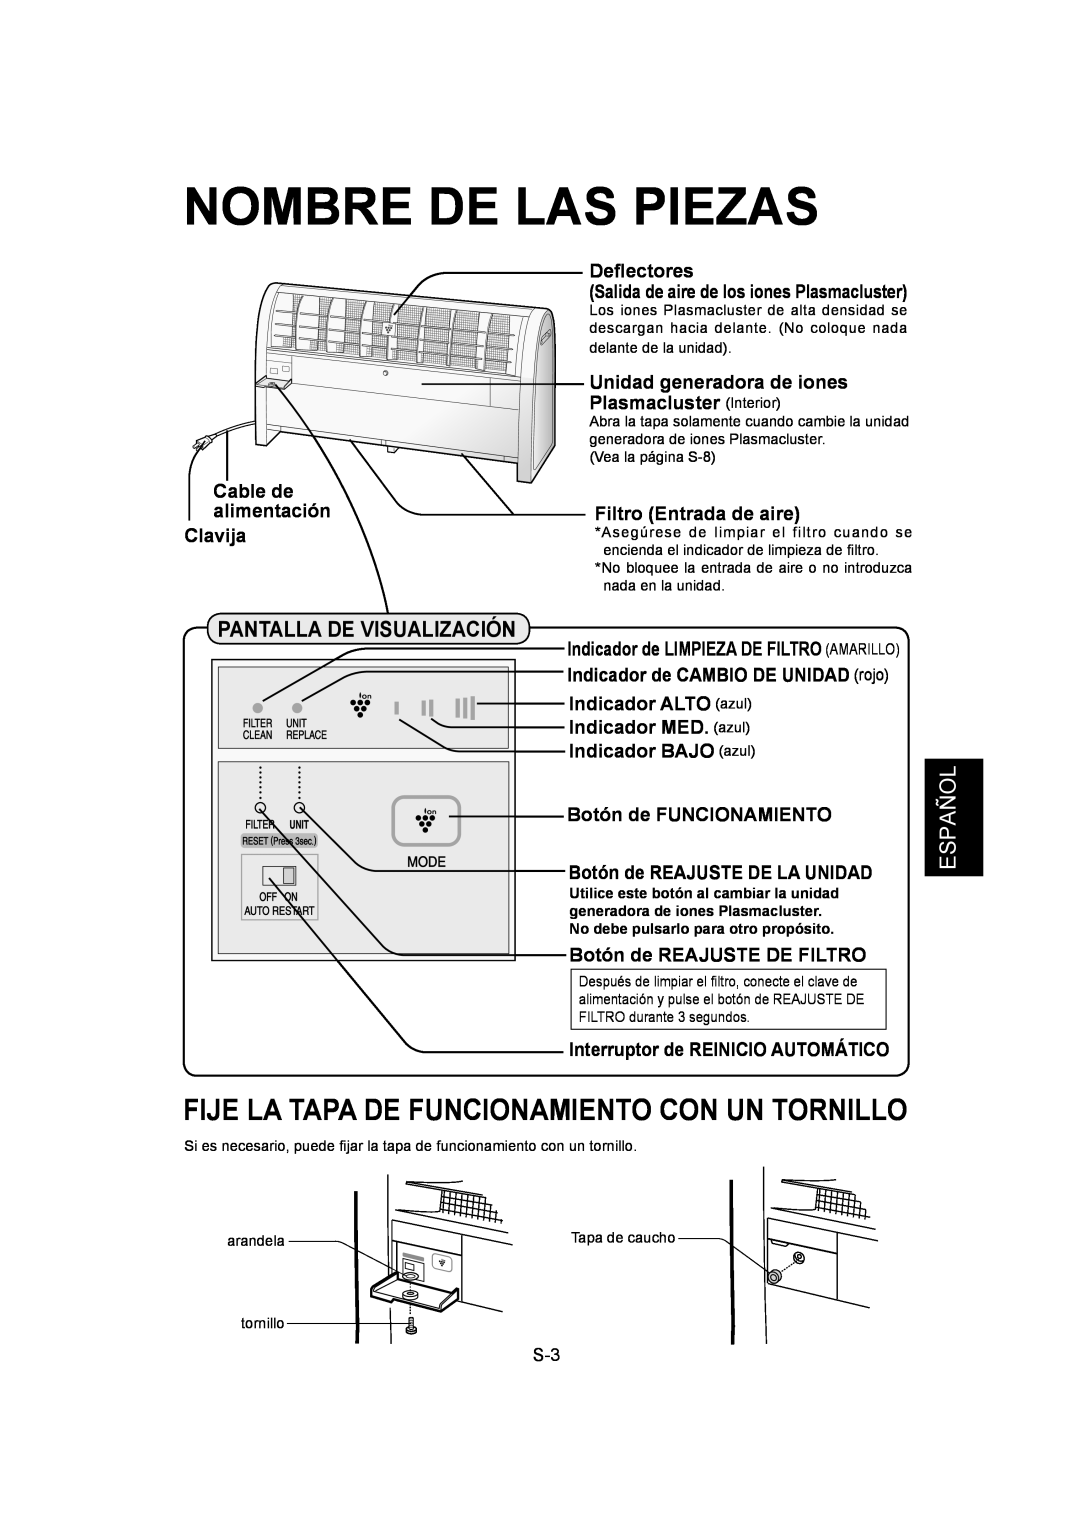 Sharp IG-A40U operation manual Nombre De Las Piezas, Fije La Tapa De Funcionamiento Con Un Tornillo, Español 